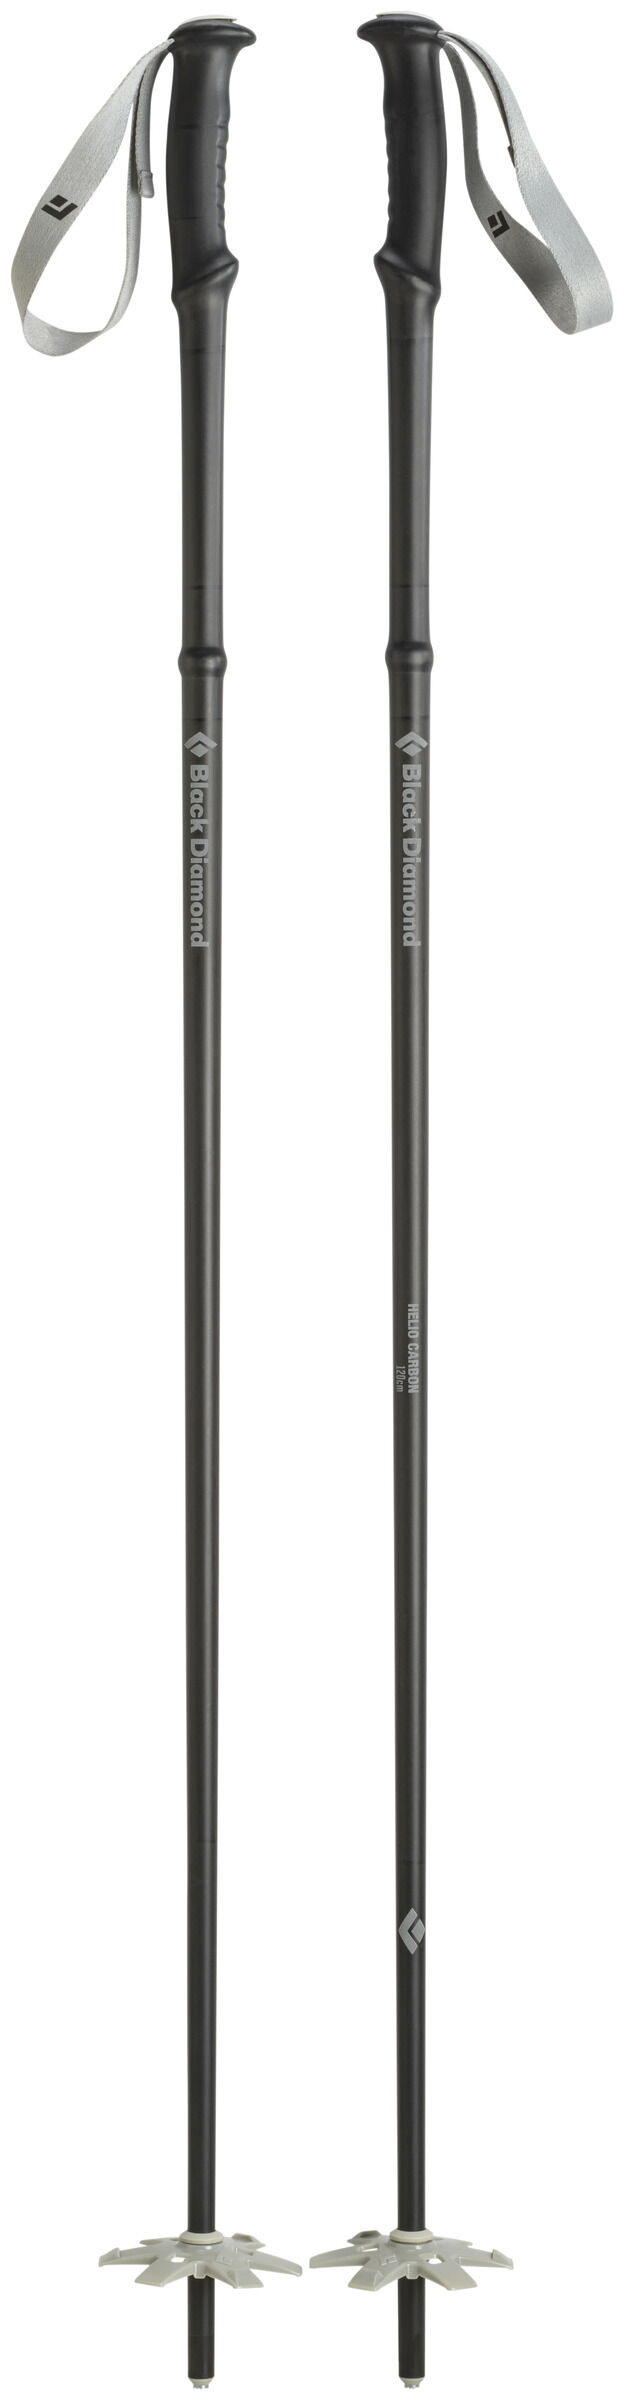 Black Diamond - Helio Fixed Length Carbon - Ski poles